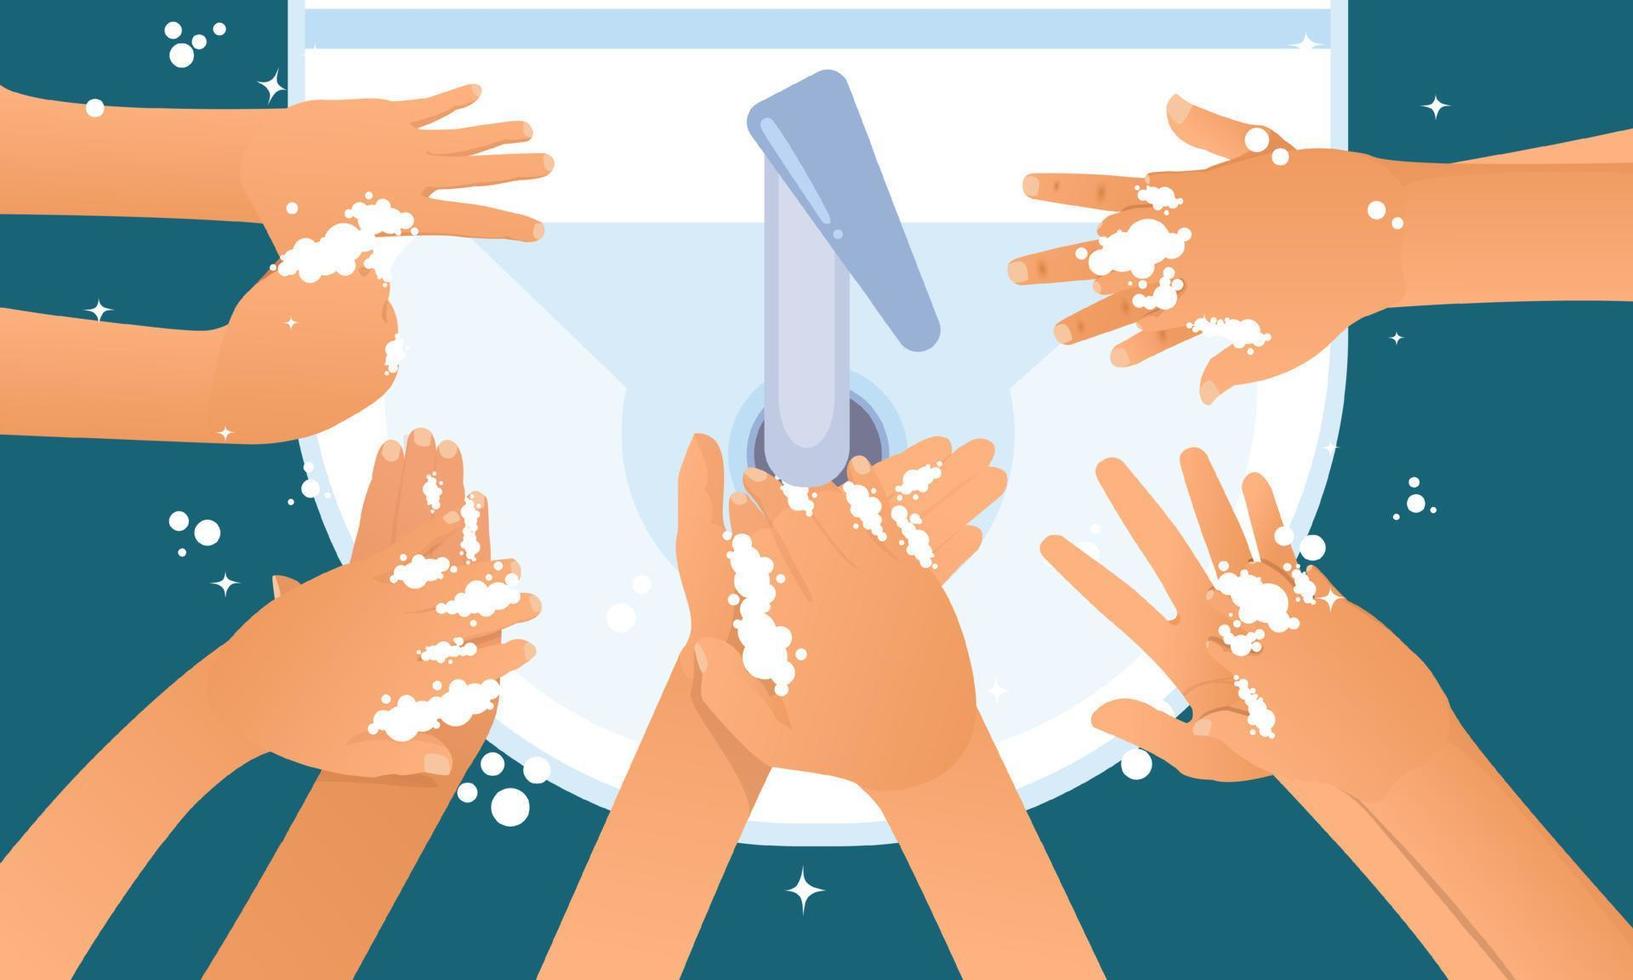 dia de lavar as mãos. ilustração de lavagem das mãos. água, lavar as mãos, limpar. conceito de higiene. vetor